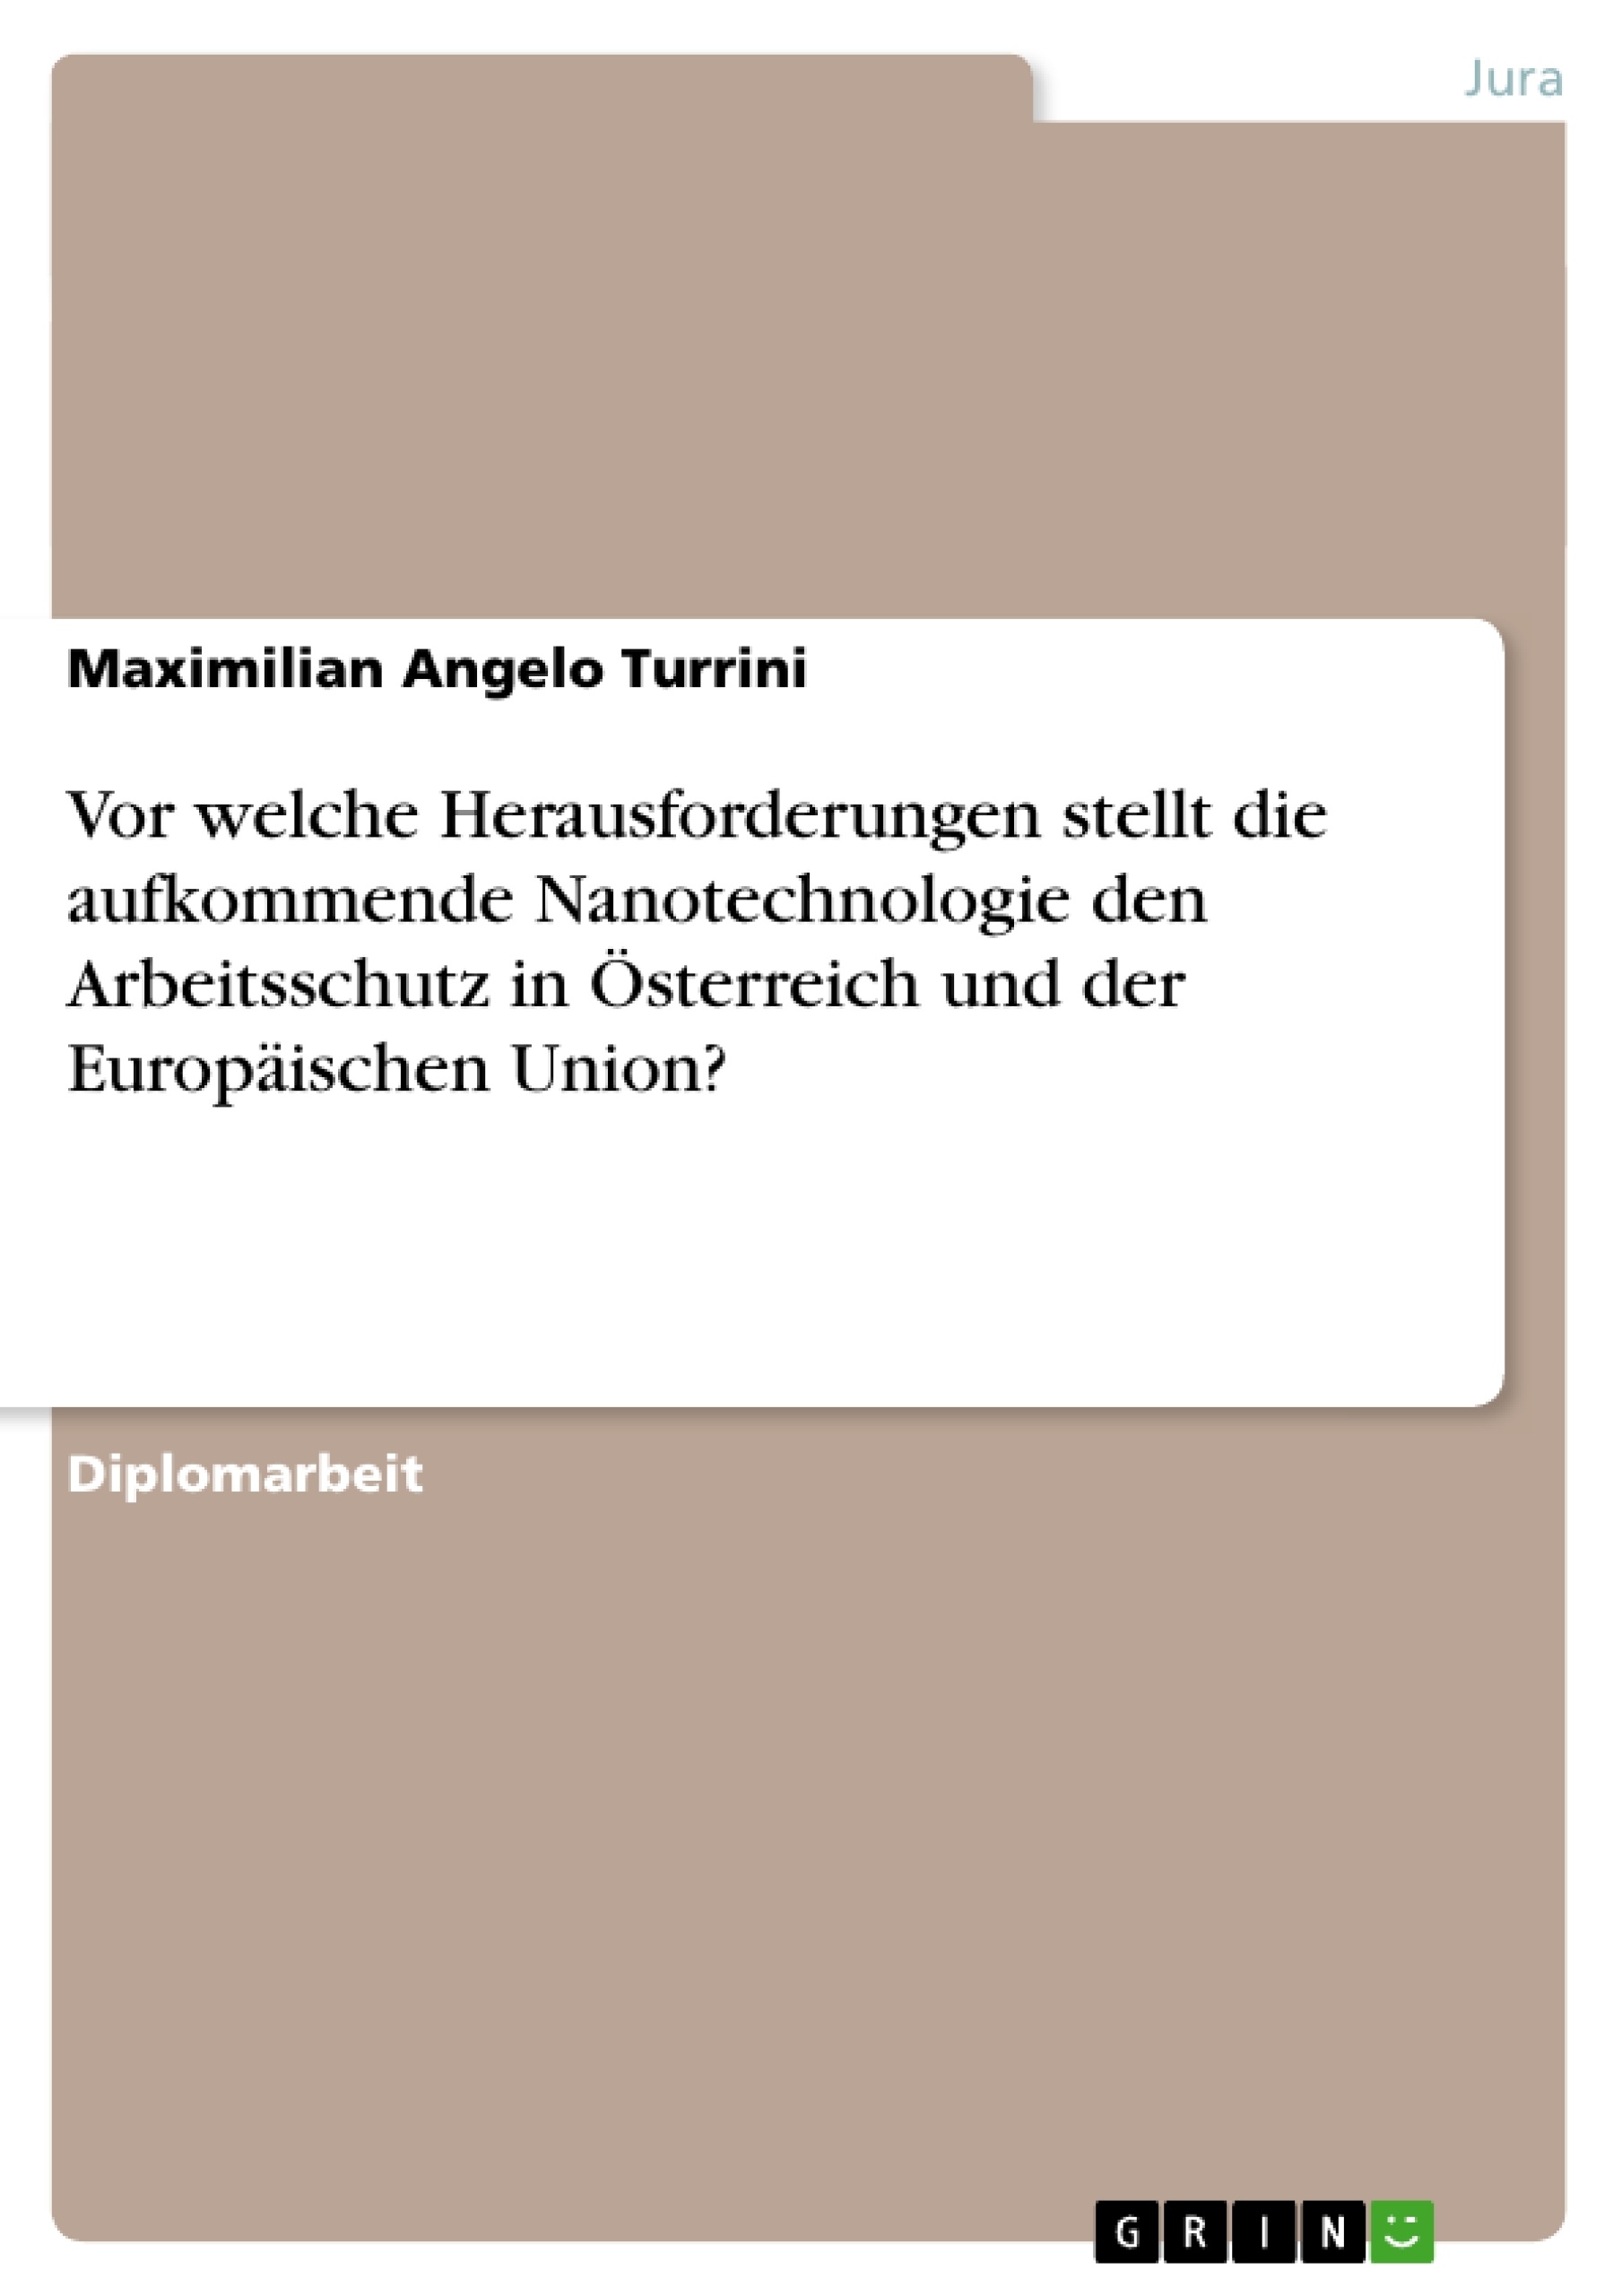 Titre: Vor welche Herausforderungen stellt die aufkommende Nanotechnologie den Arbeitsschutz in Österreich und der Europäischen Union?